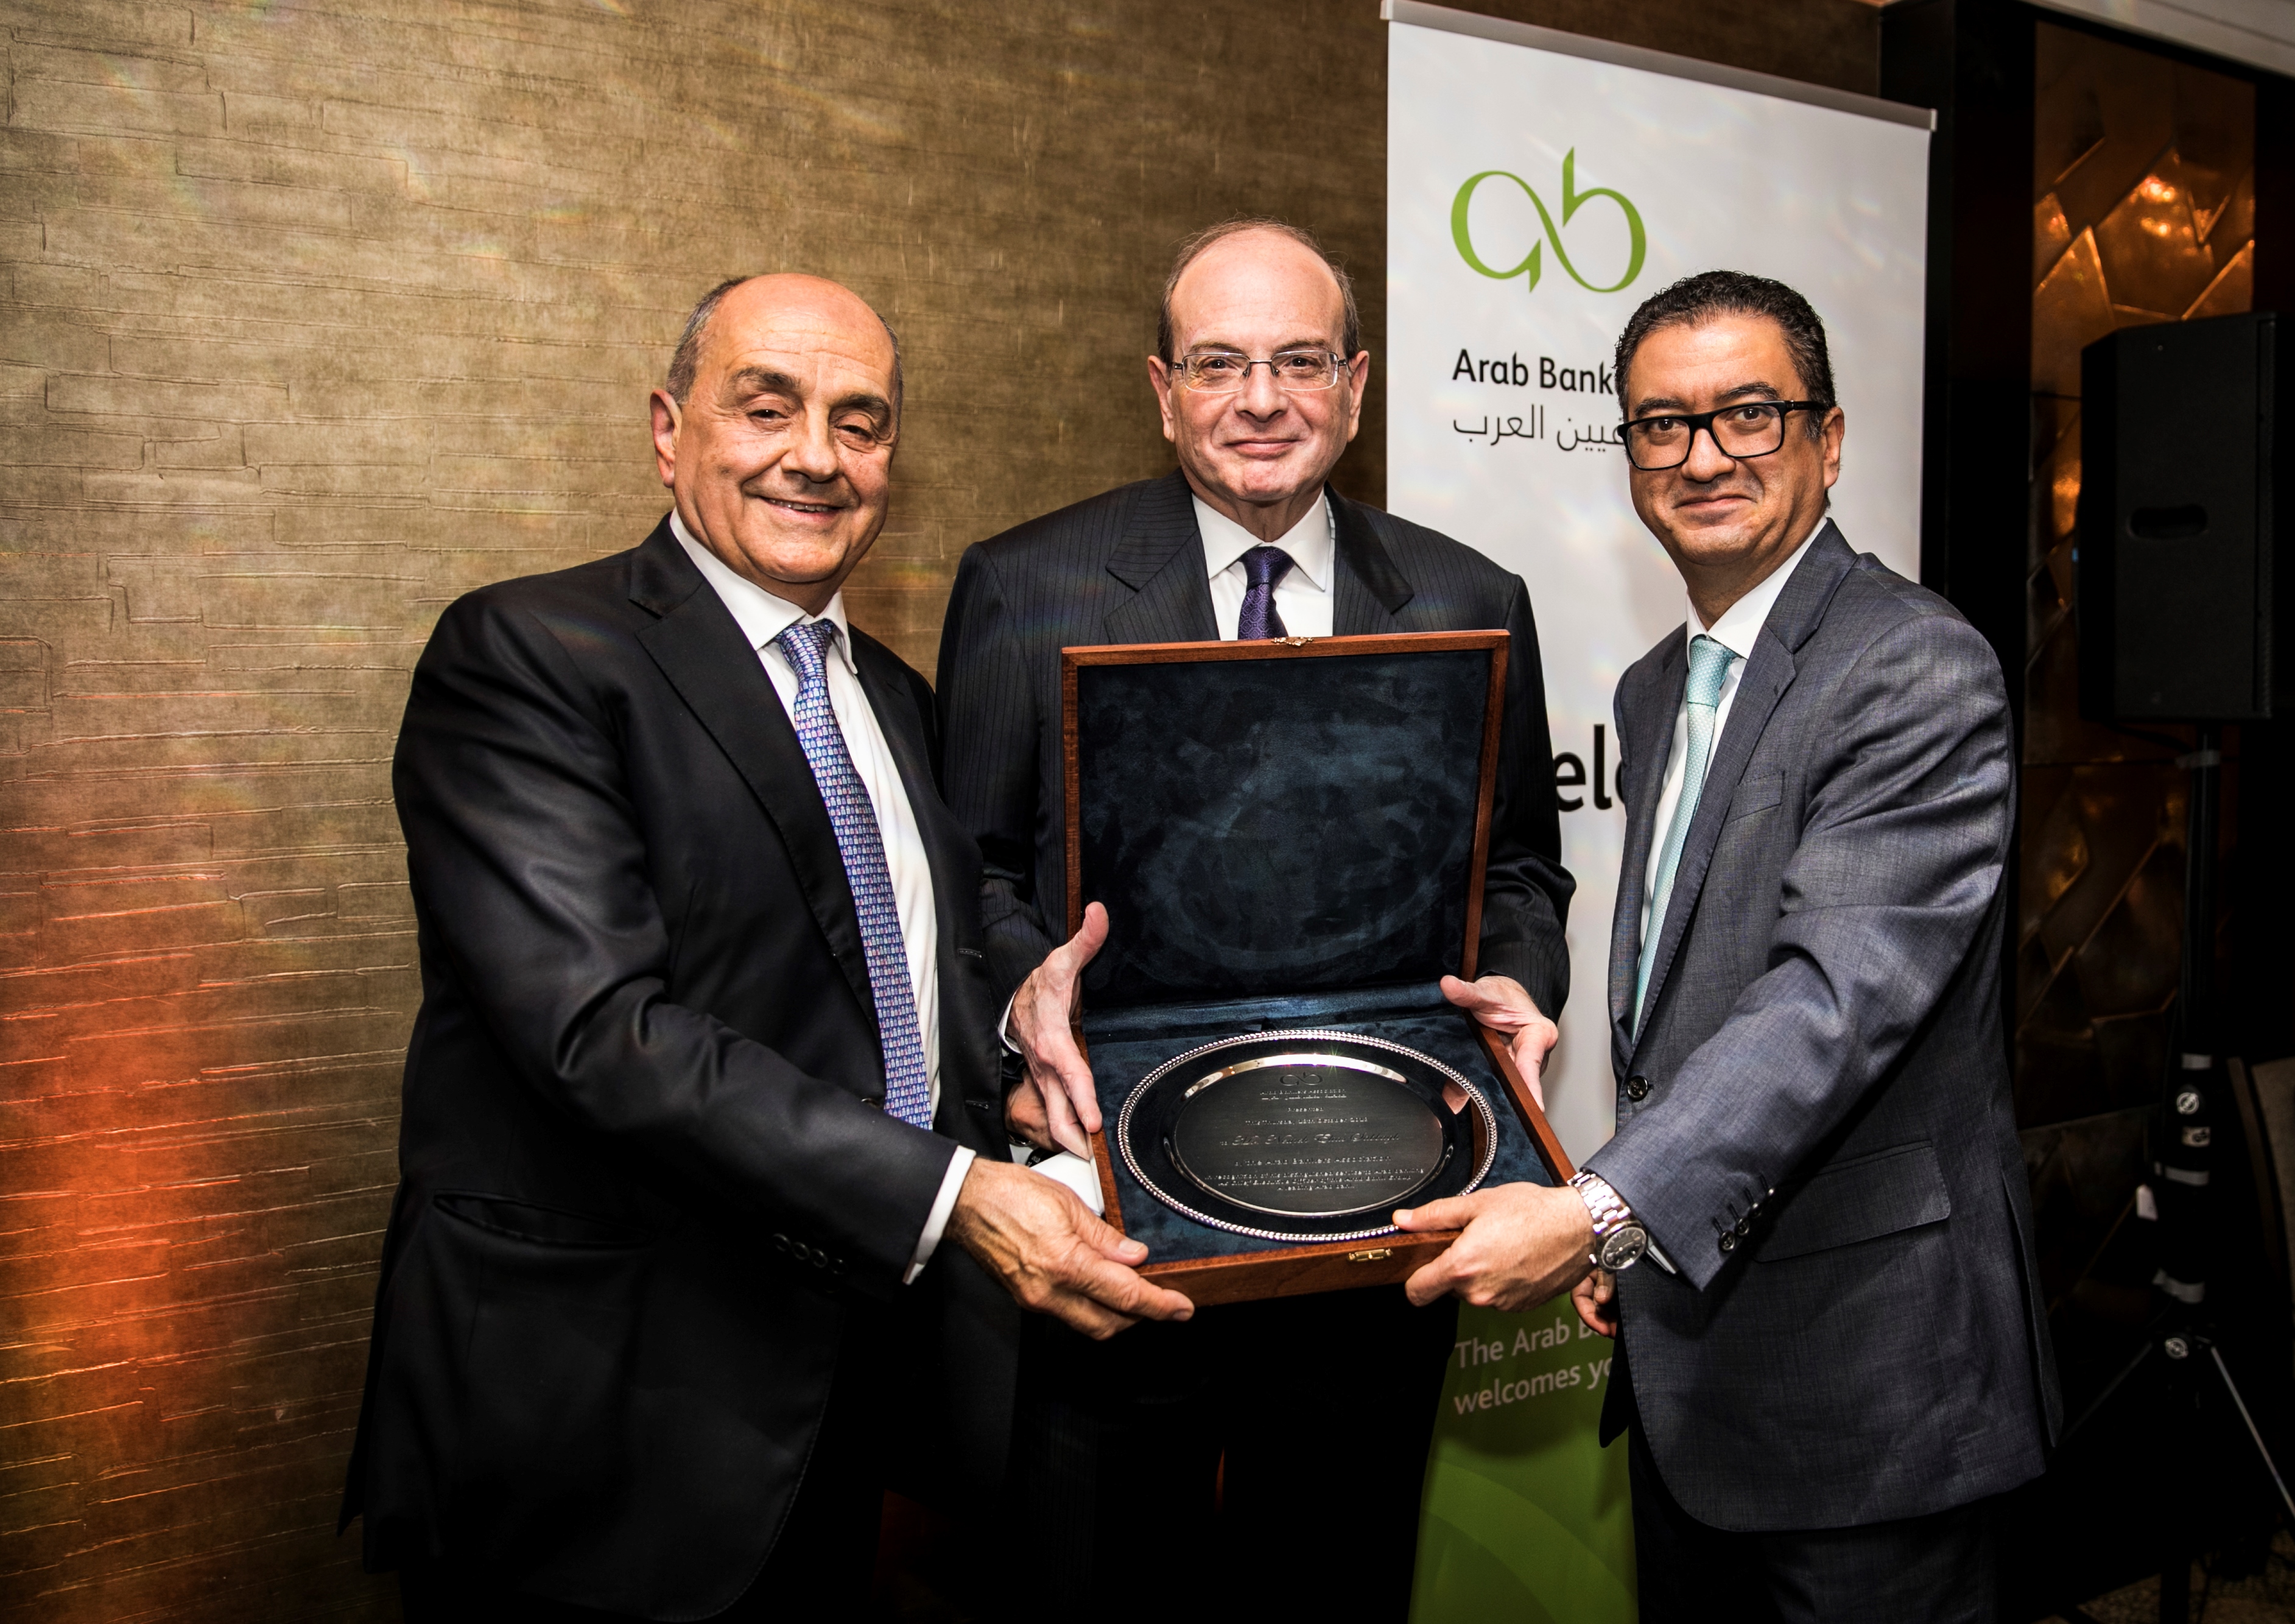 جائزة "الإسهامات المتميزة في القطاع المصرفي العربي" لنعمة صباغ